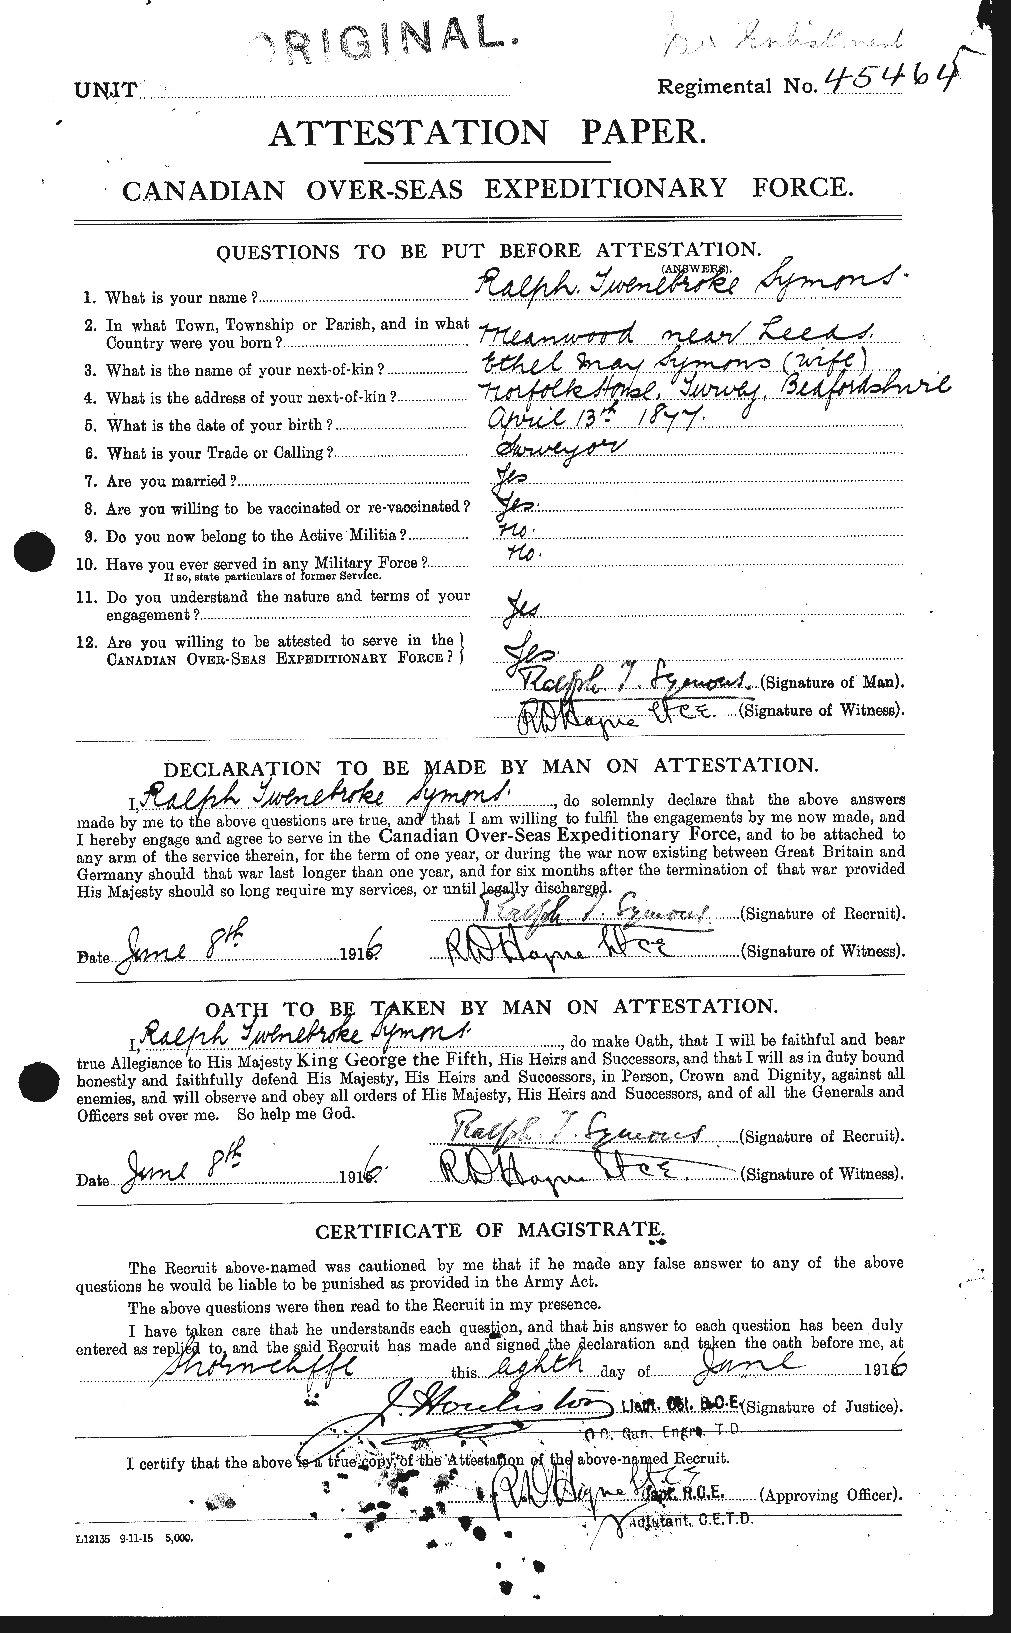 Dossiers du Personnel de la Première Guerre mondiale - CEC 129036a